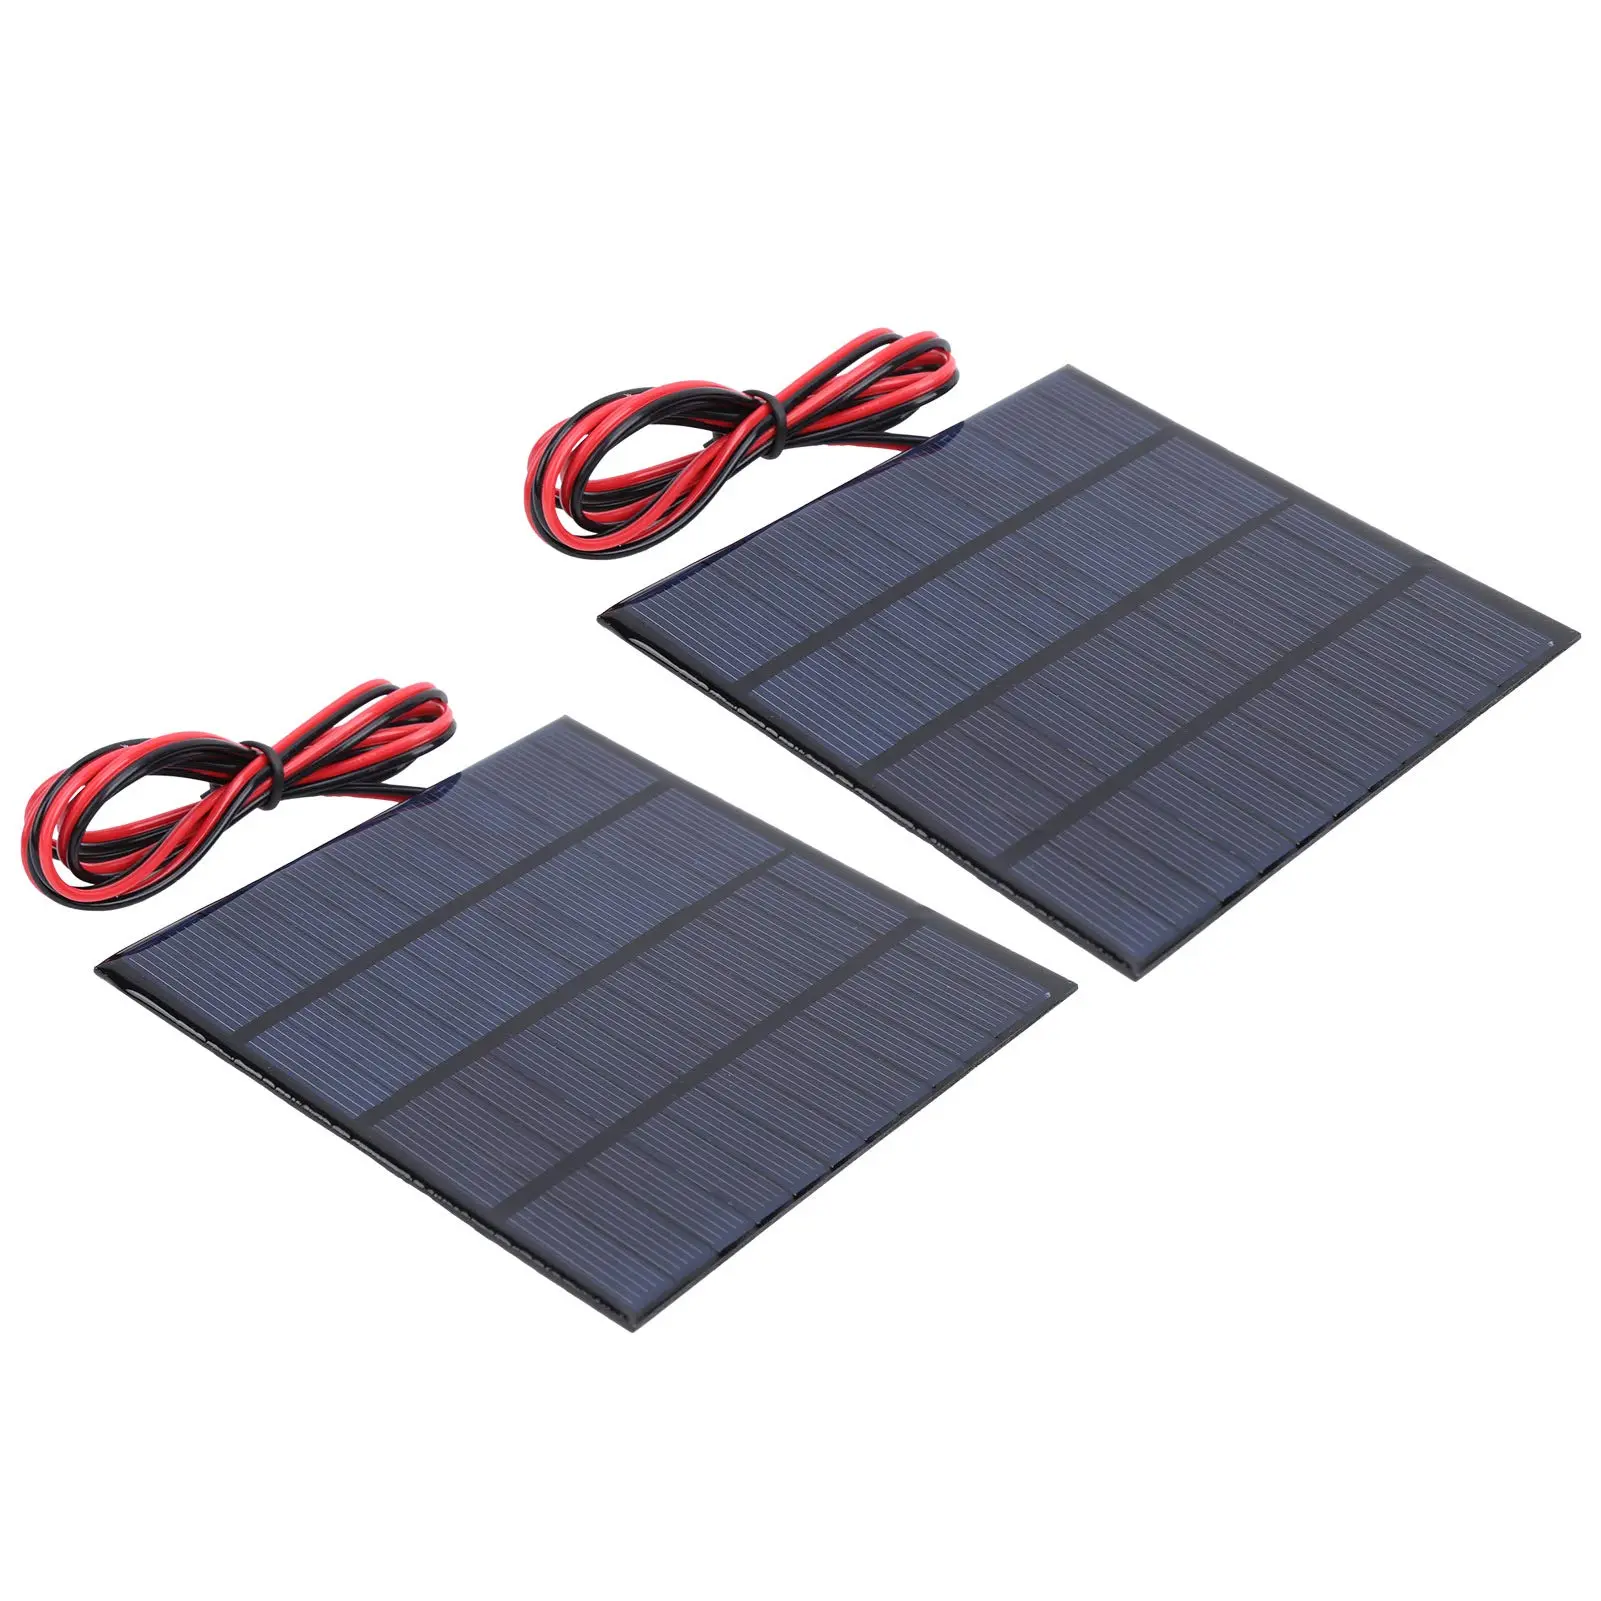 comprar placa solar pequeña - Cuánto cuestan las placas solares pequeñas